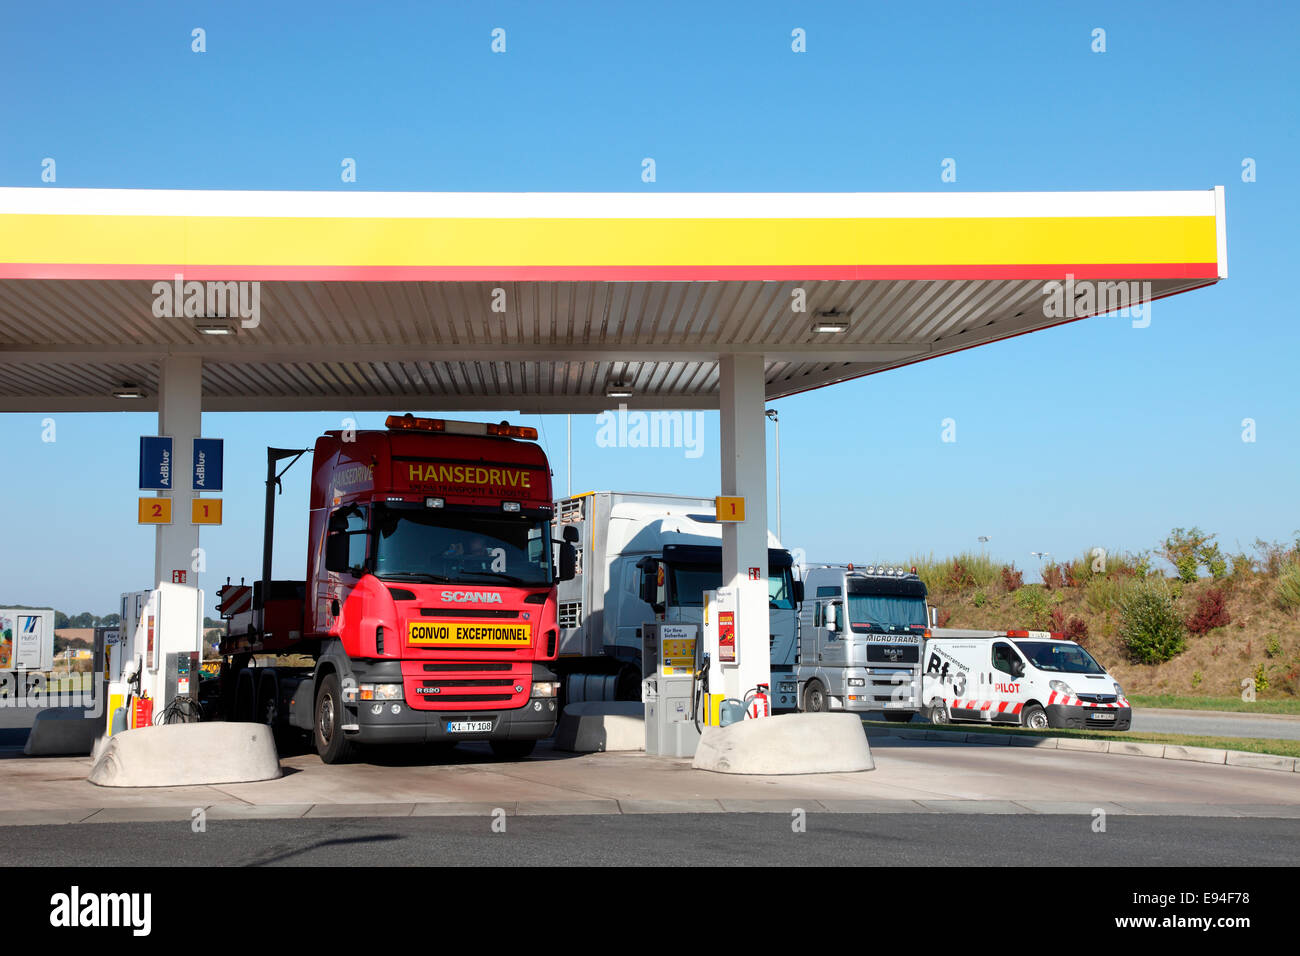 Stazione di rifornimento Shell in Meclemburgo Pomerania. Foto Stock